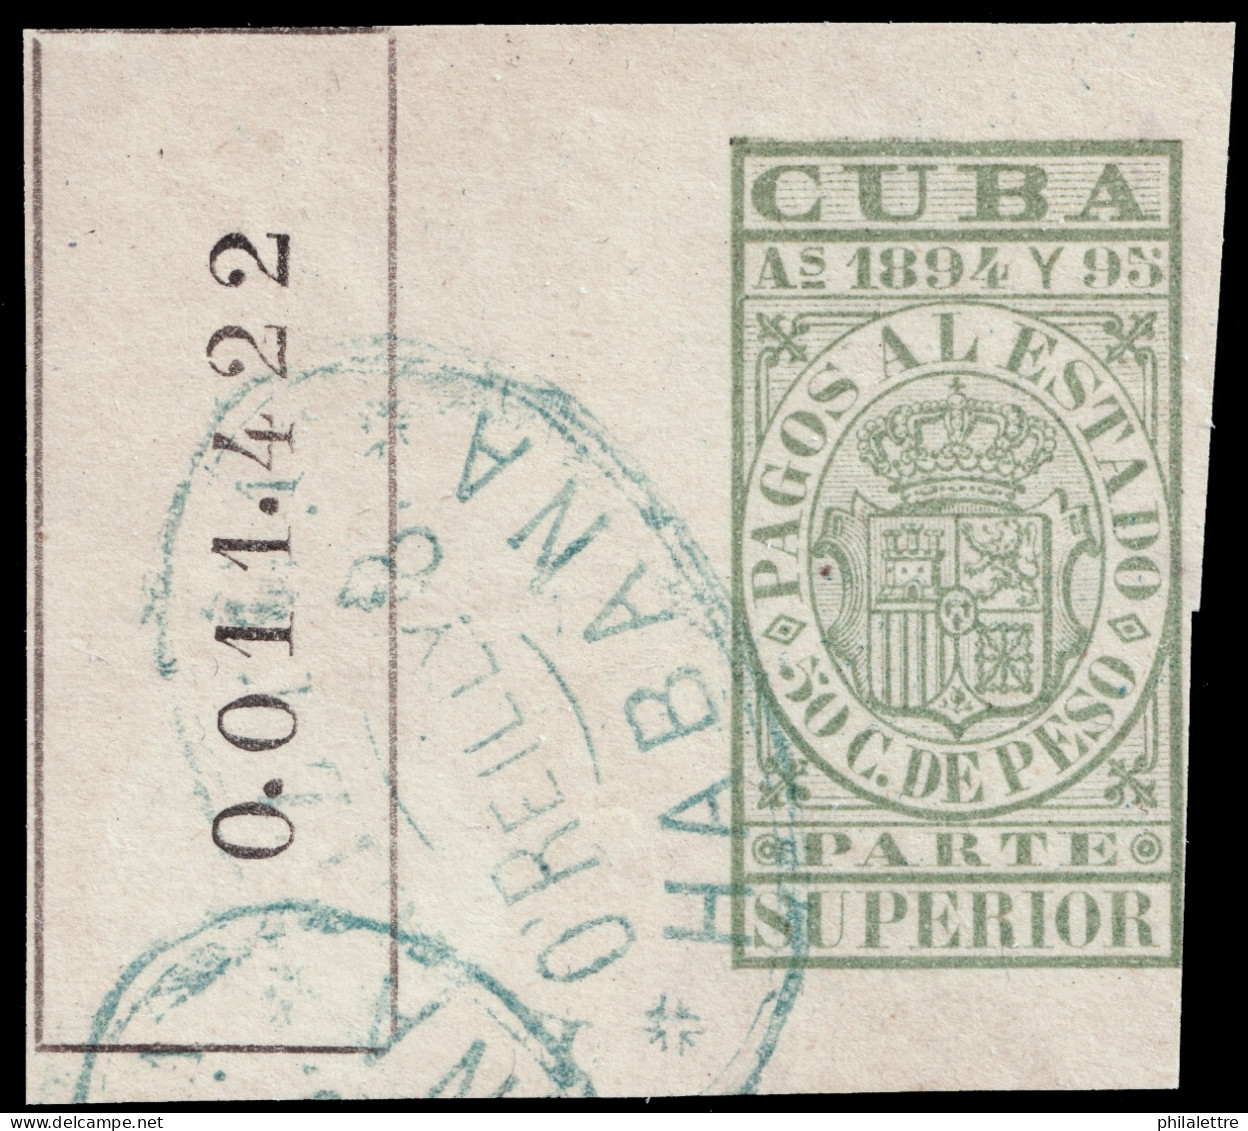 ESPAGNE / ESPANA - COLONIAS (Cuba) 1894/95 "PAGOS AL ESTADO" Fulcher 1139 50c Parte Superior Usado (0.011.422) - Kuba (1874-1898)